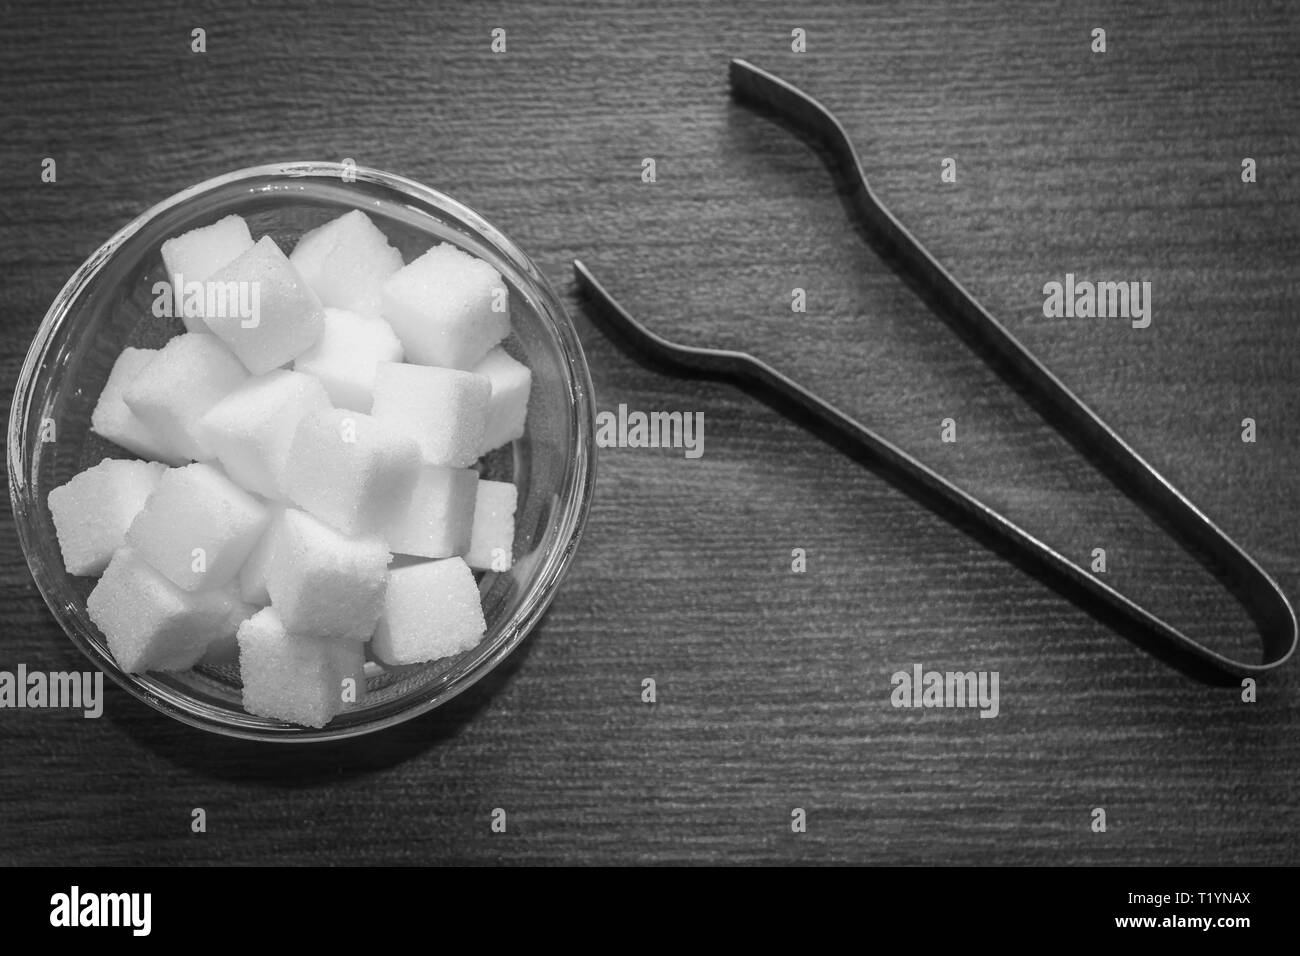 Vista superiore dei cubetti di zucchero in un recipiente di vetro con una coppia di pinze da cucina foreceps mantenuto sul pavimento in legno. Contrasty bianco e nero cucina setup. Foto Stock